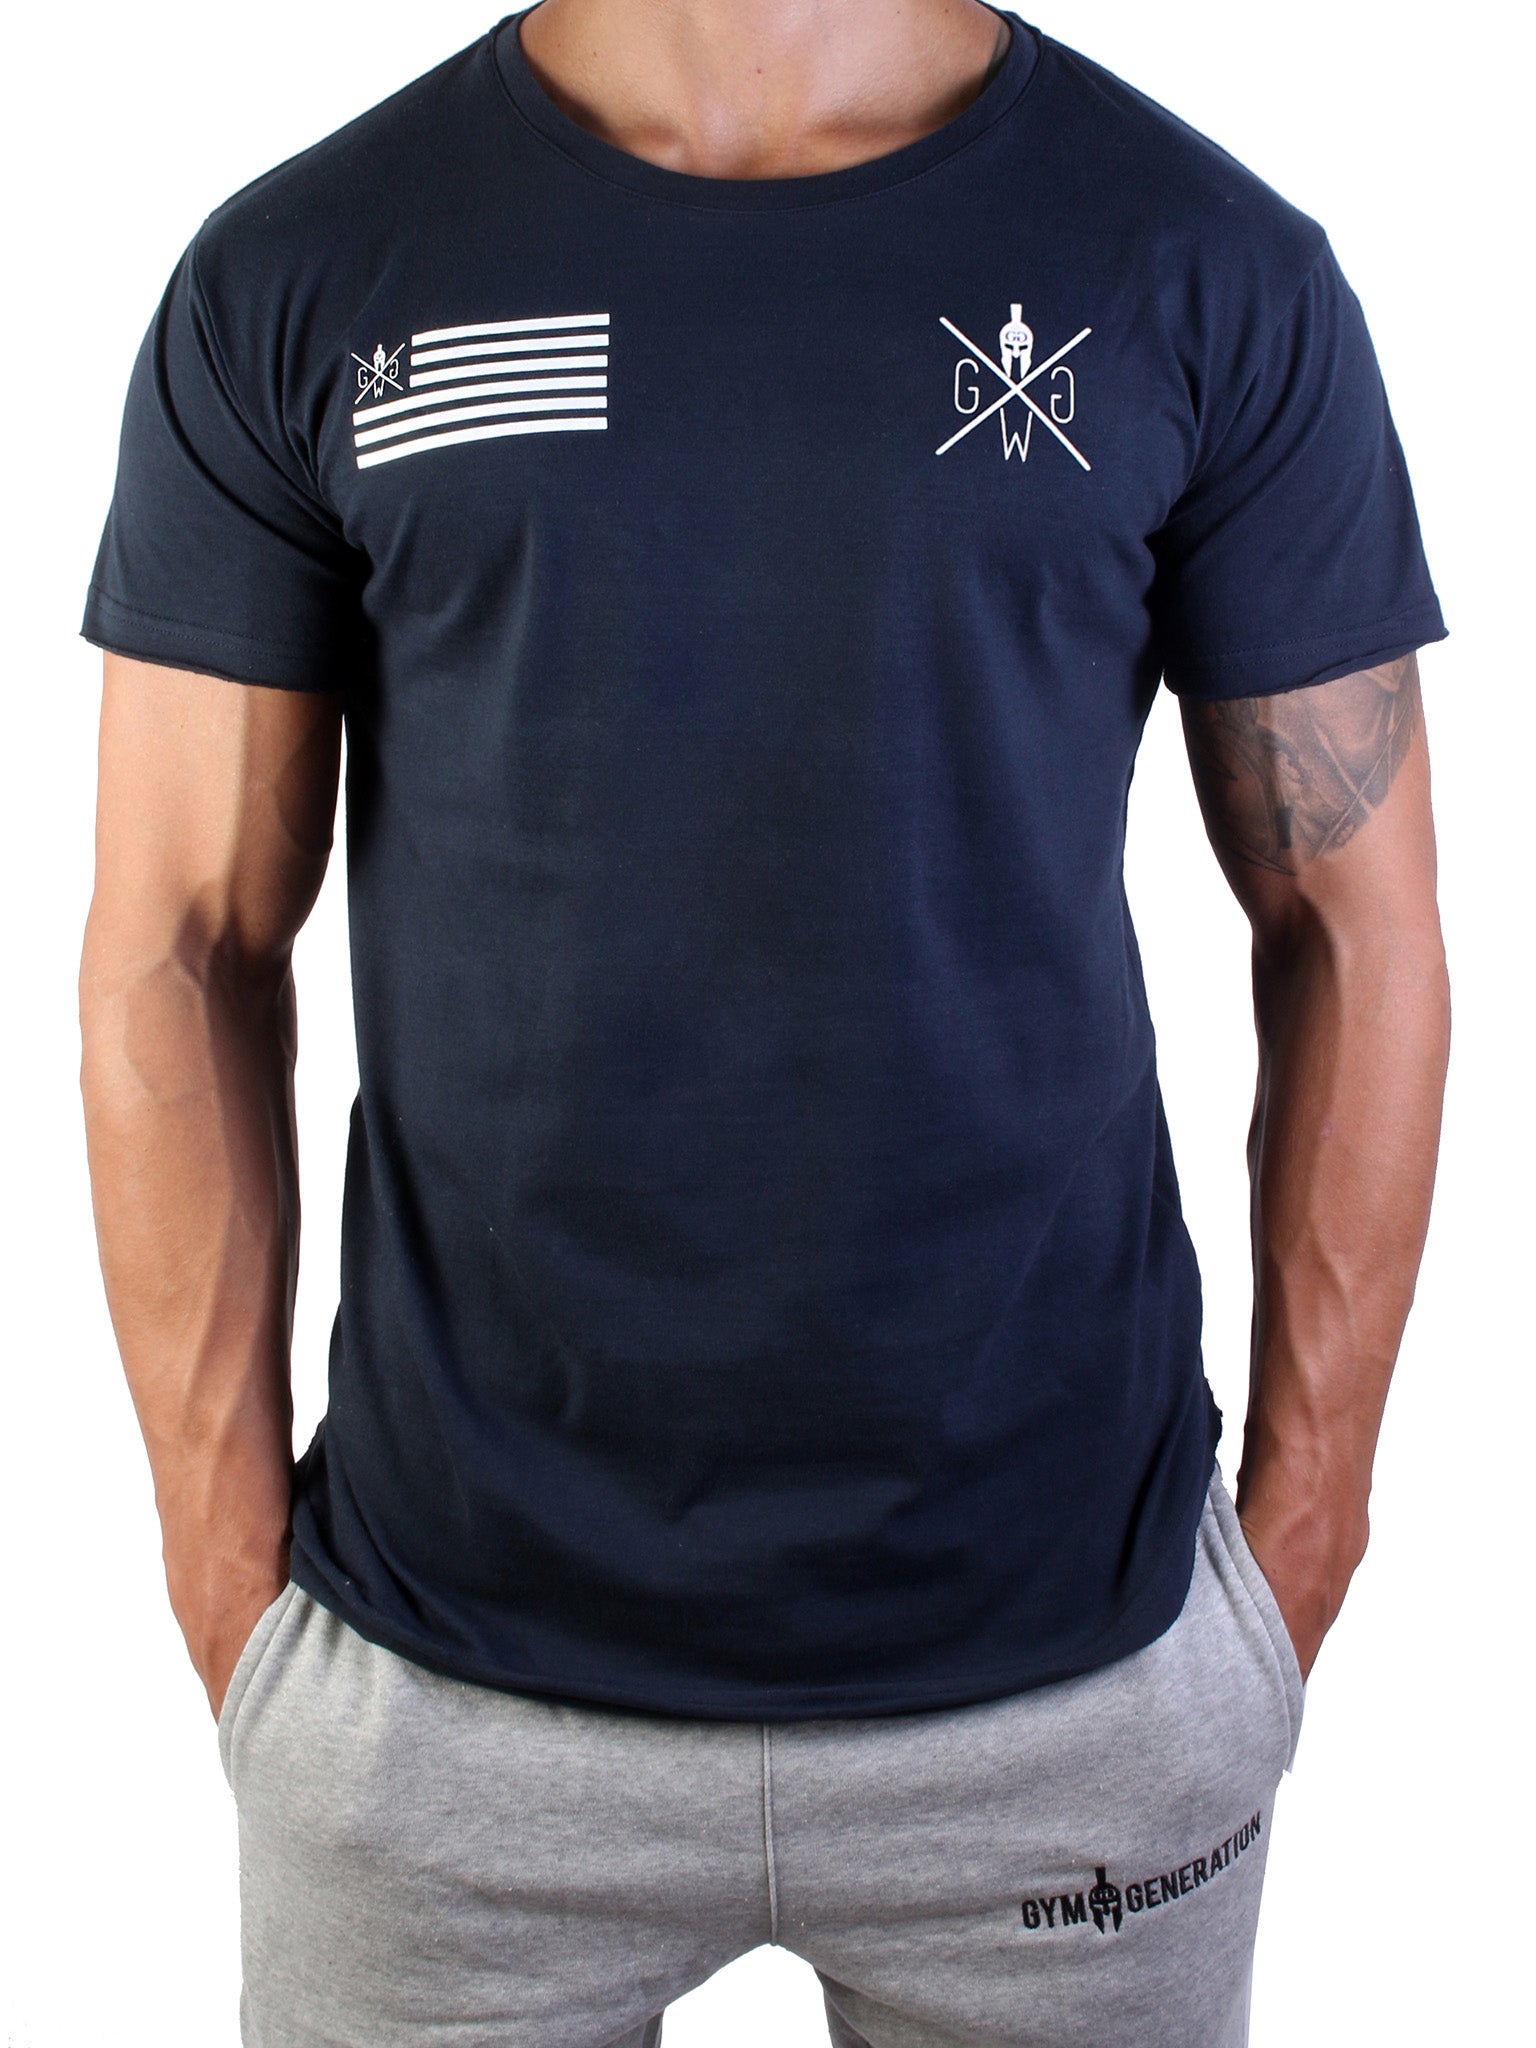 Stilvolles Herren T-Shirt in Navy-Blau mit klassischem Design und kraftvollem Spartaner-Logo.